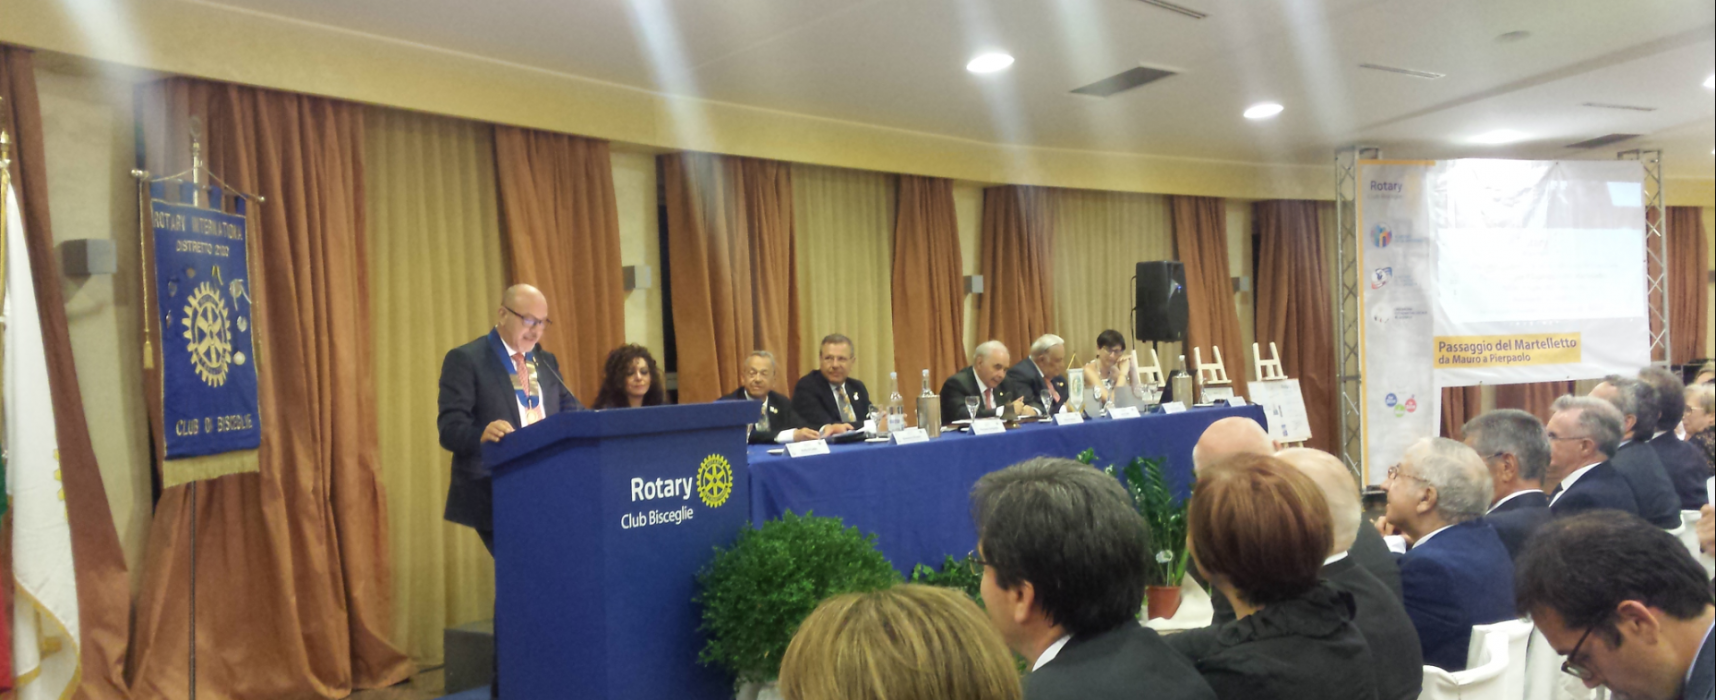 Rotary Club Bisceglie, Mauro Pedone cede il martelletto a Pierpaolo Sinigaglia